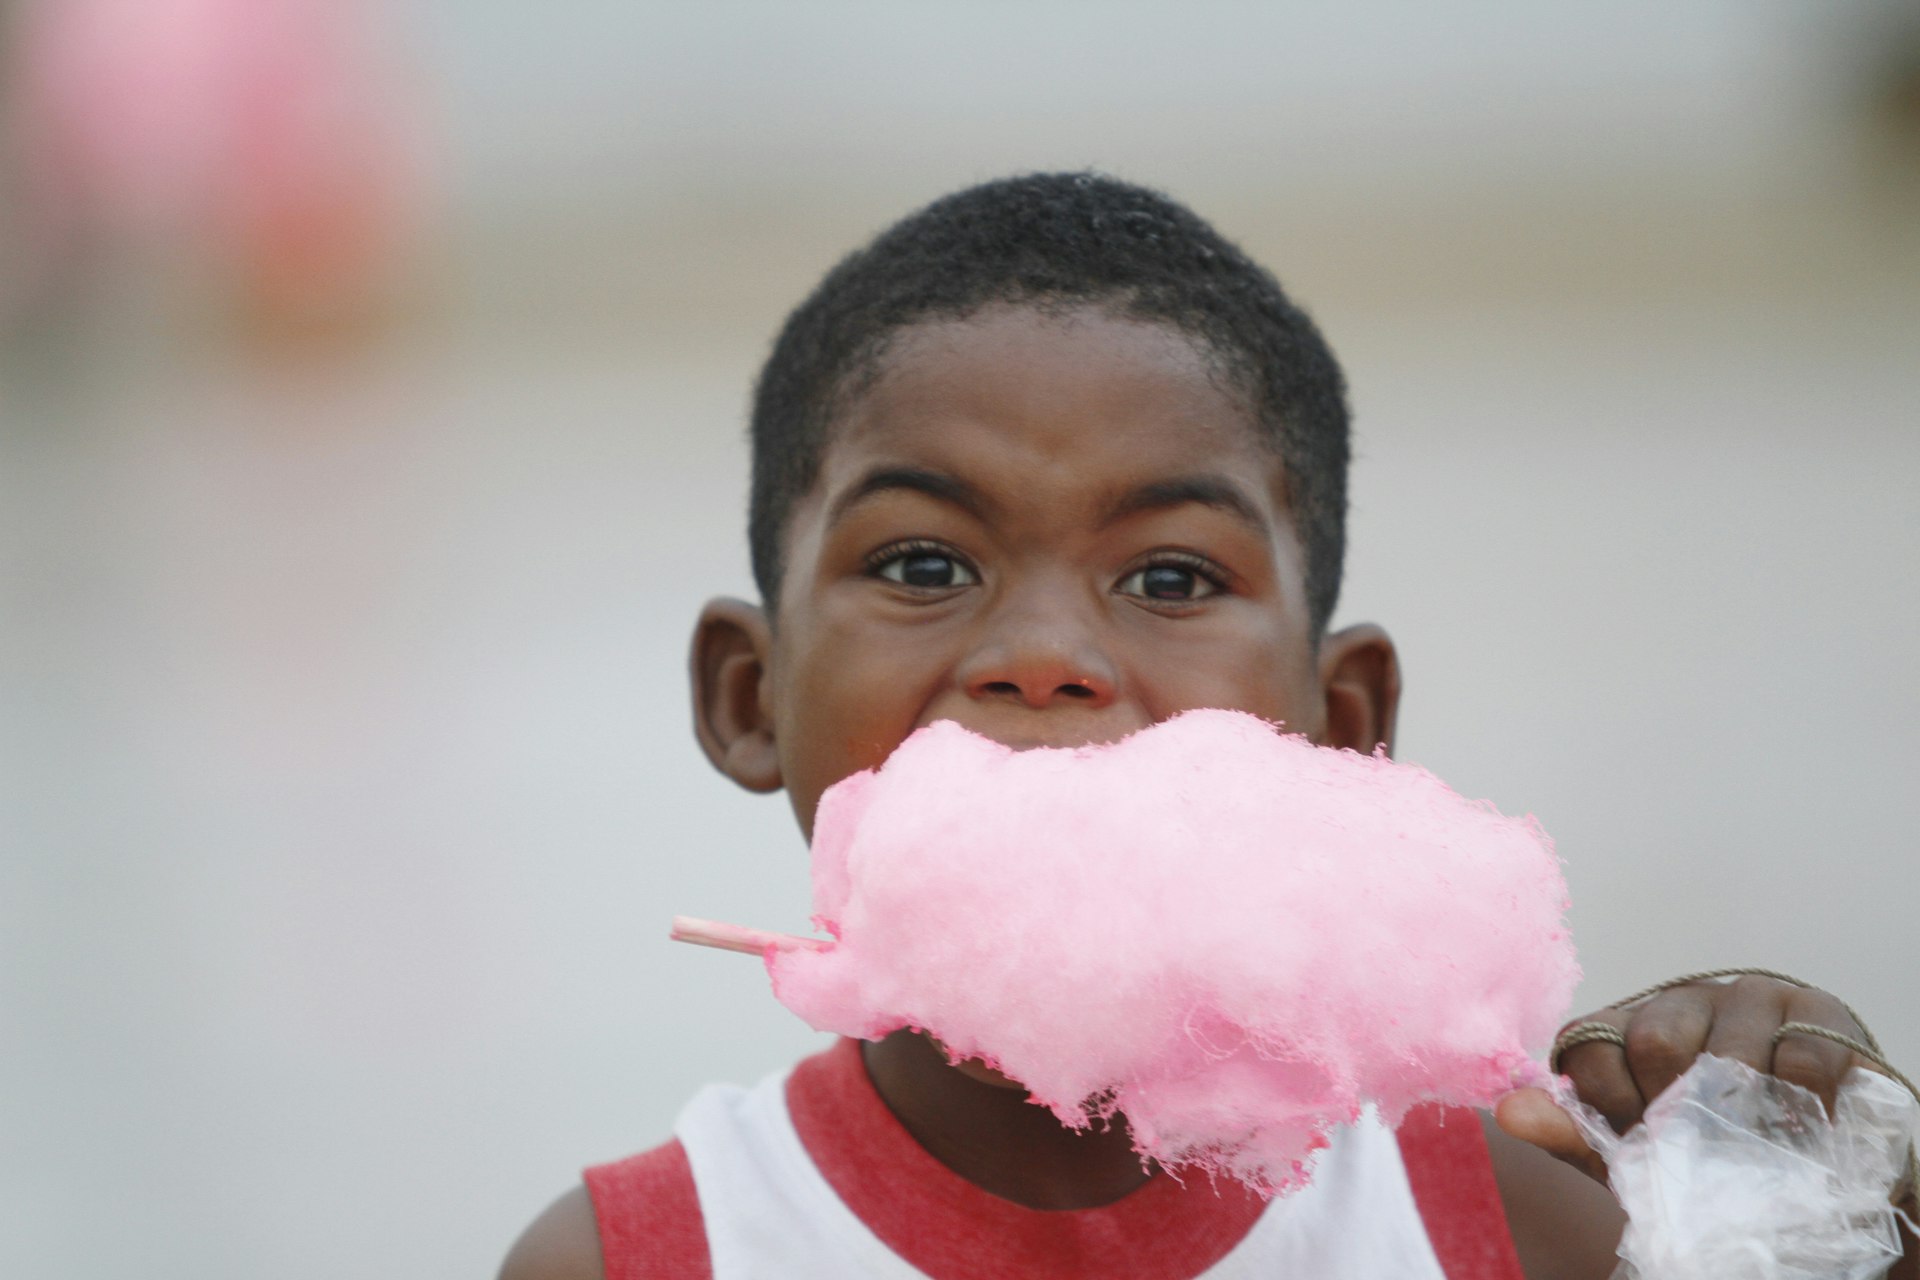  A child enjoys cotton candy in Esmeraldas, Ecuador,